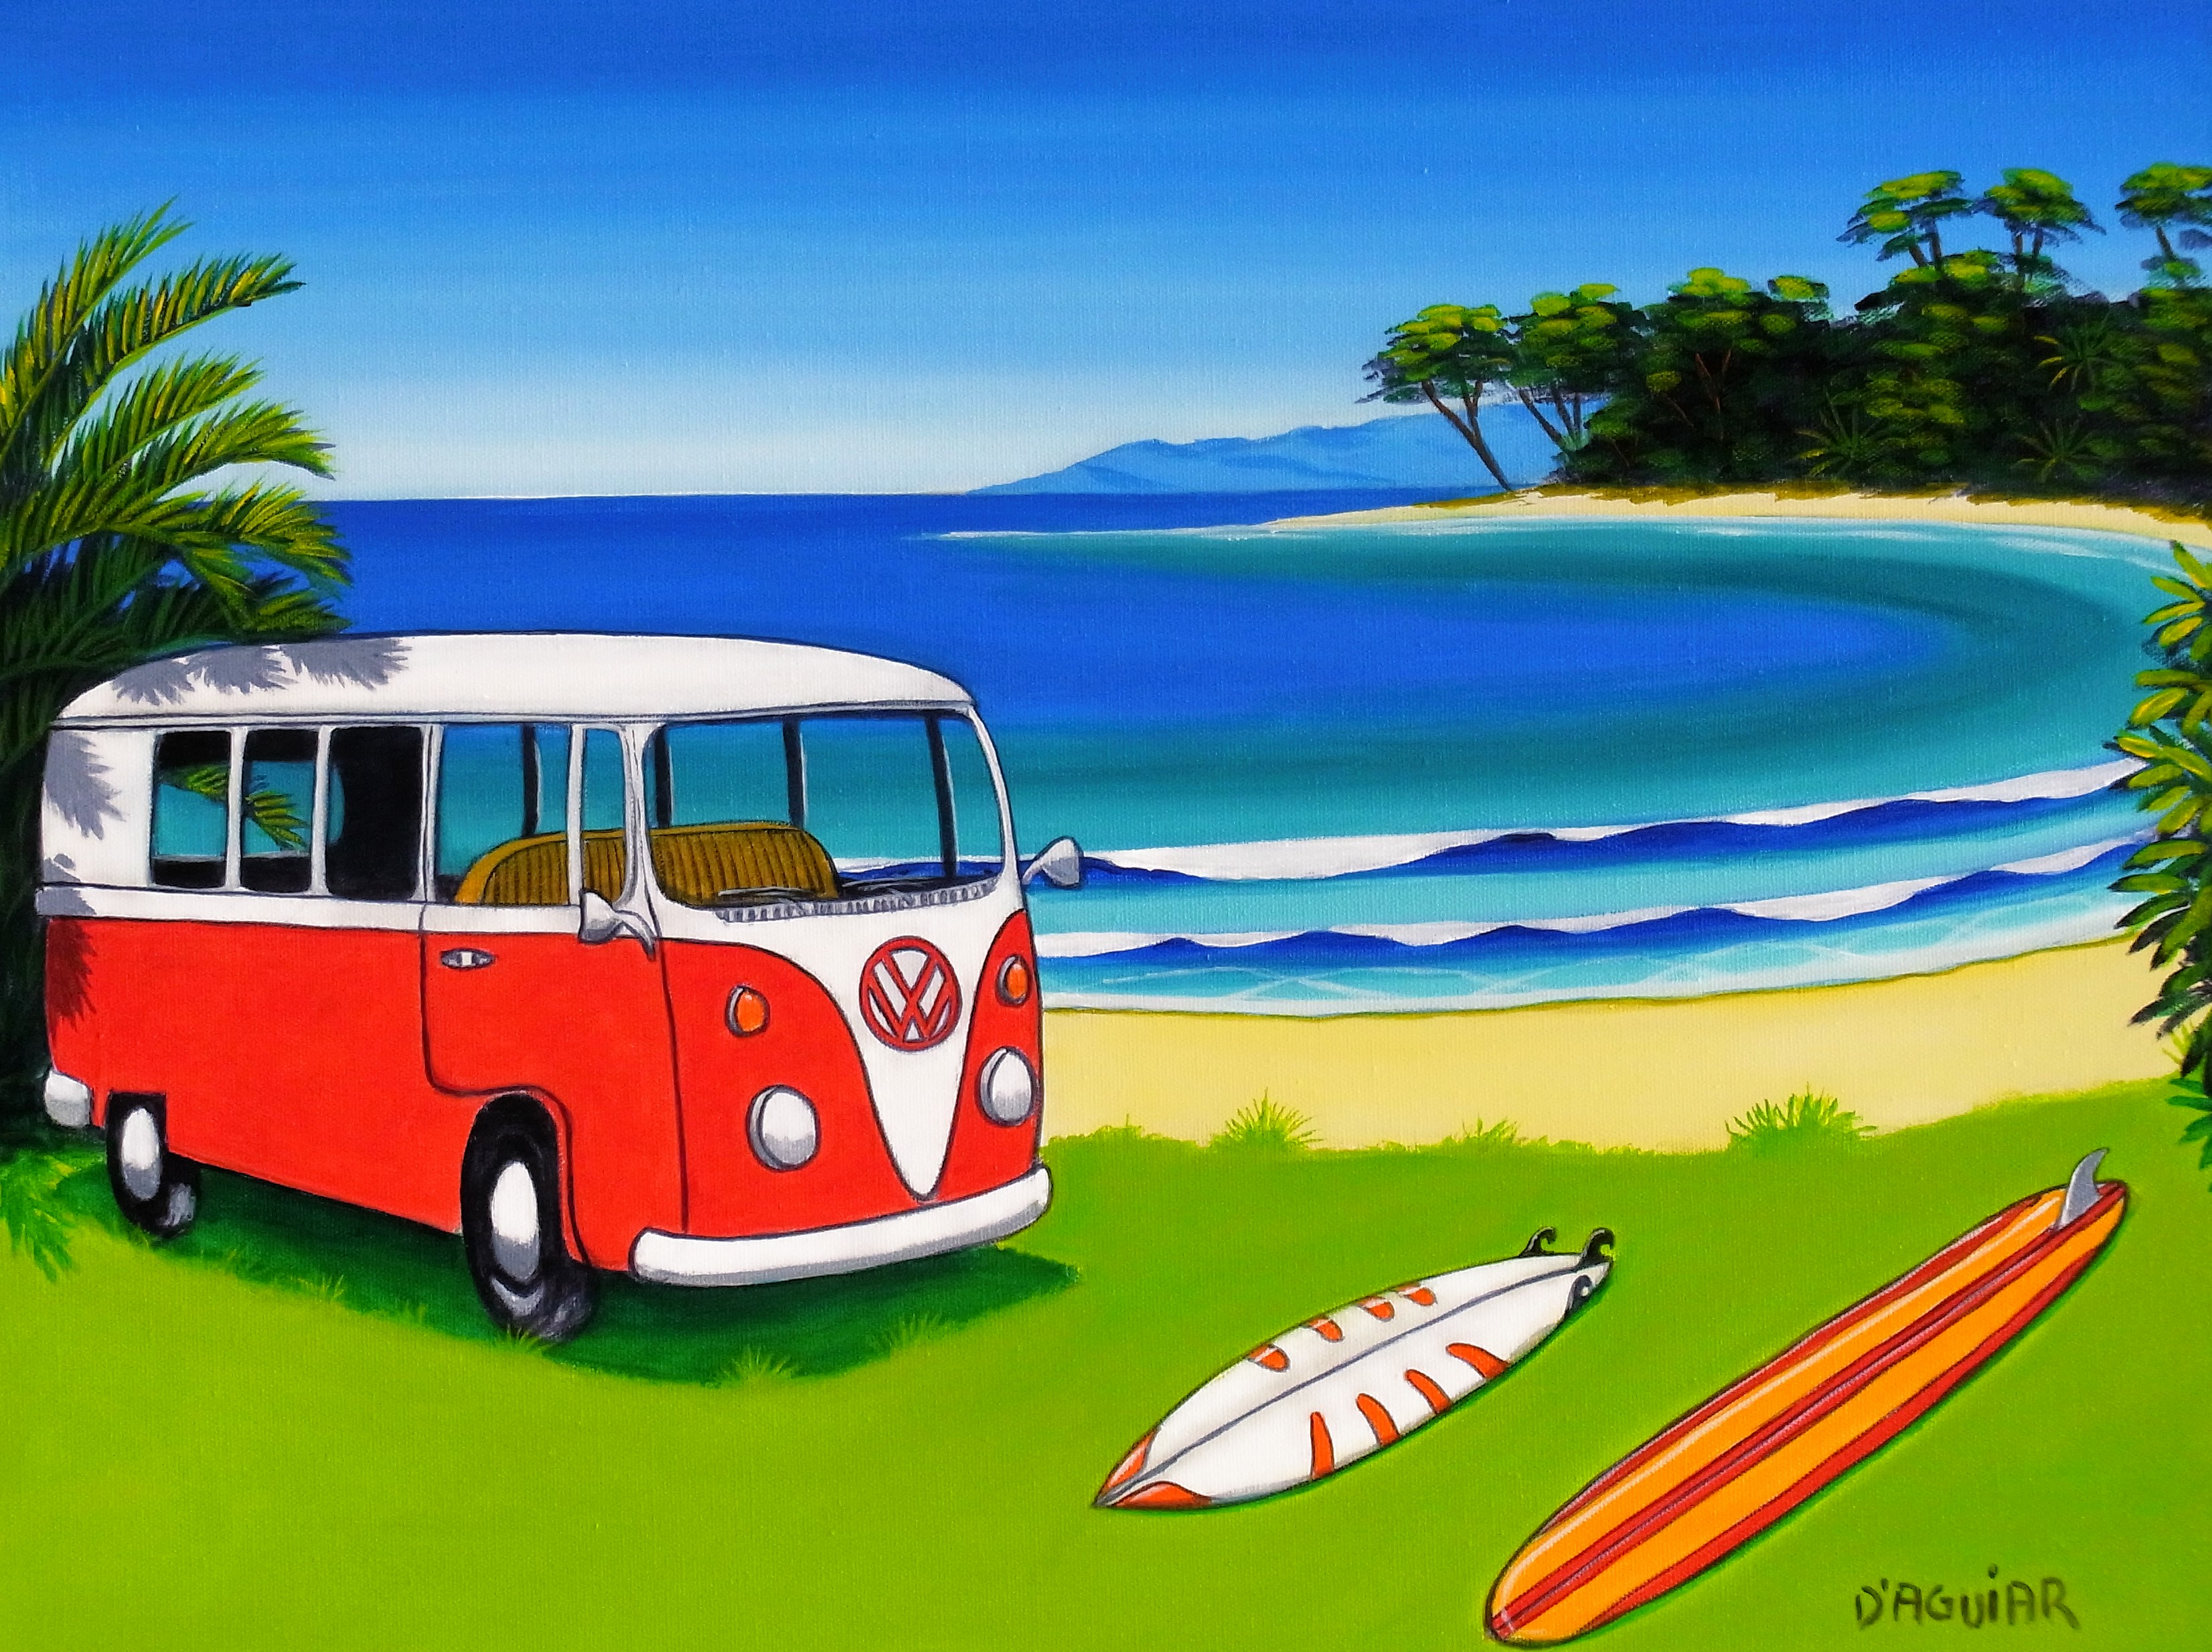 vw volkswagen combi van bus wallpaper beach art 3304x2468 3304x2468